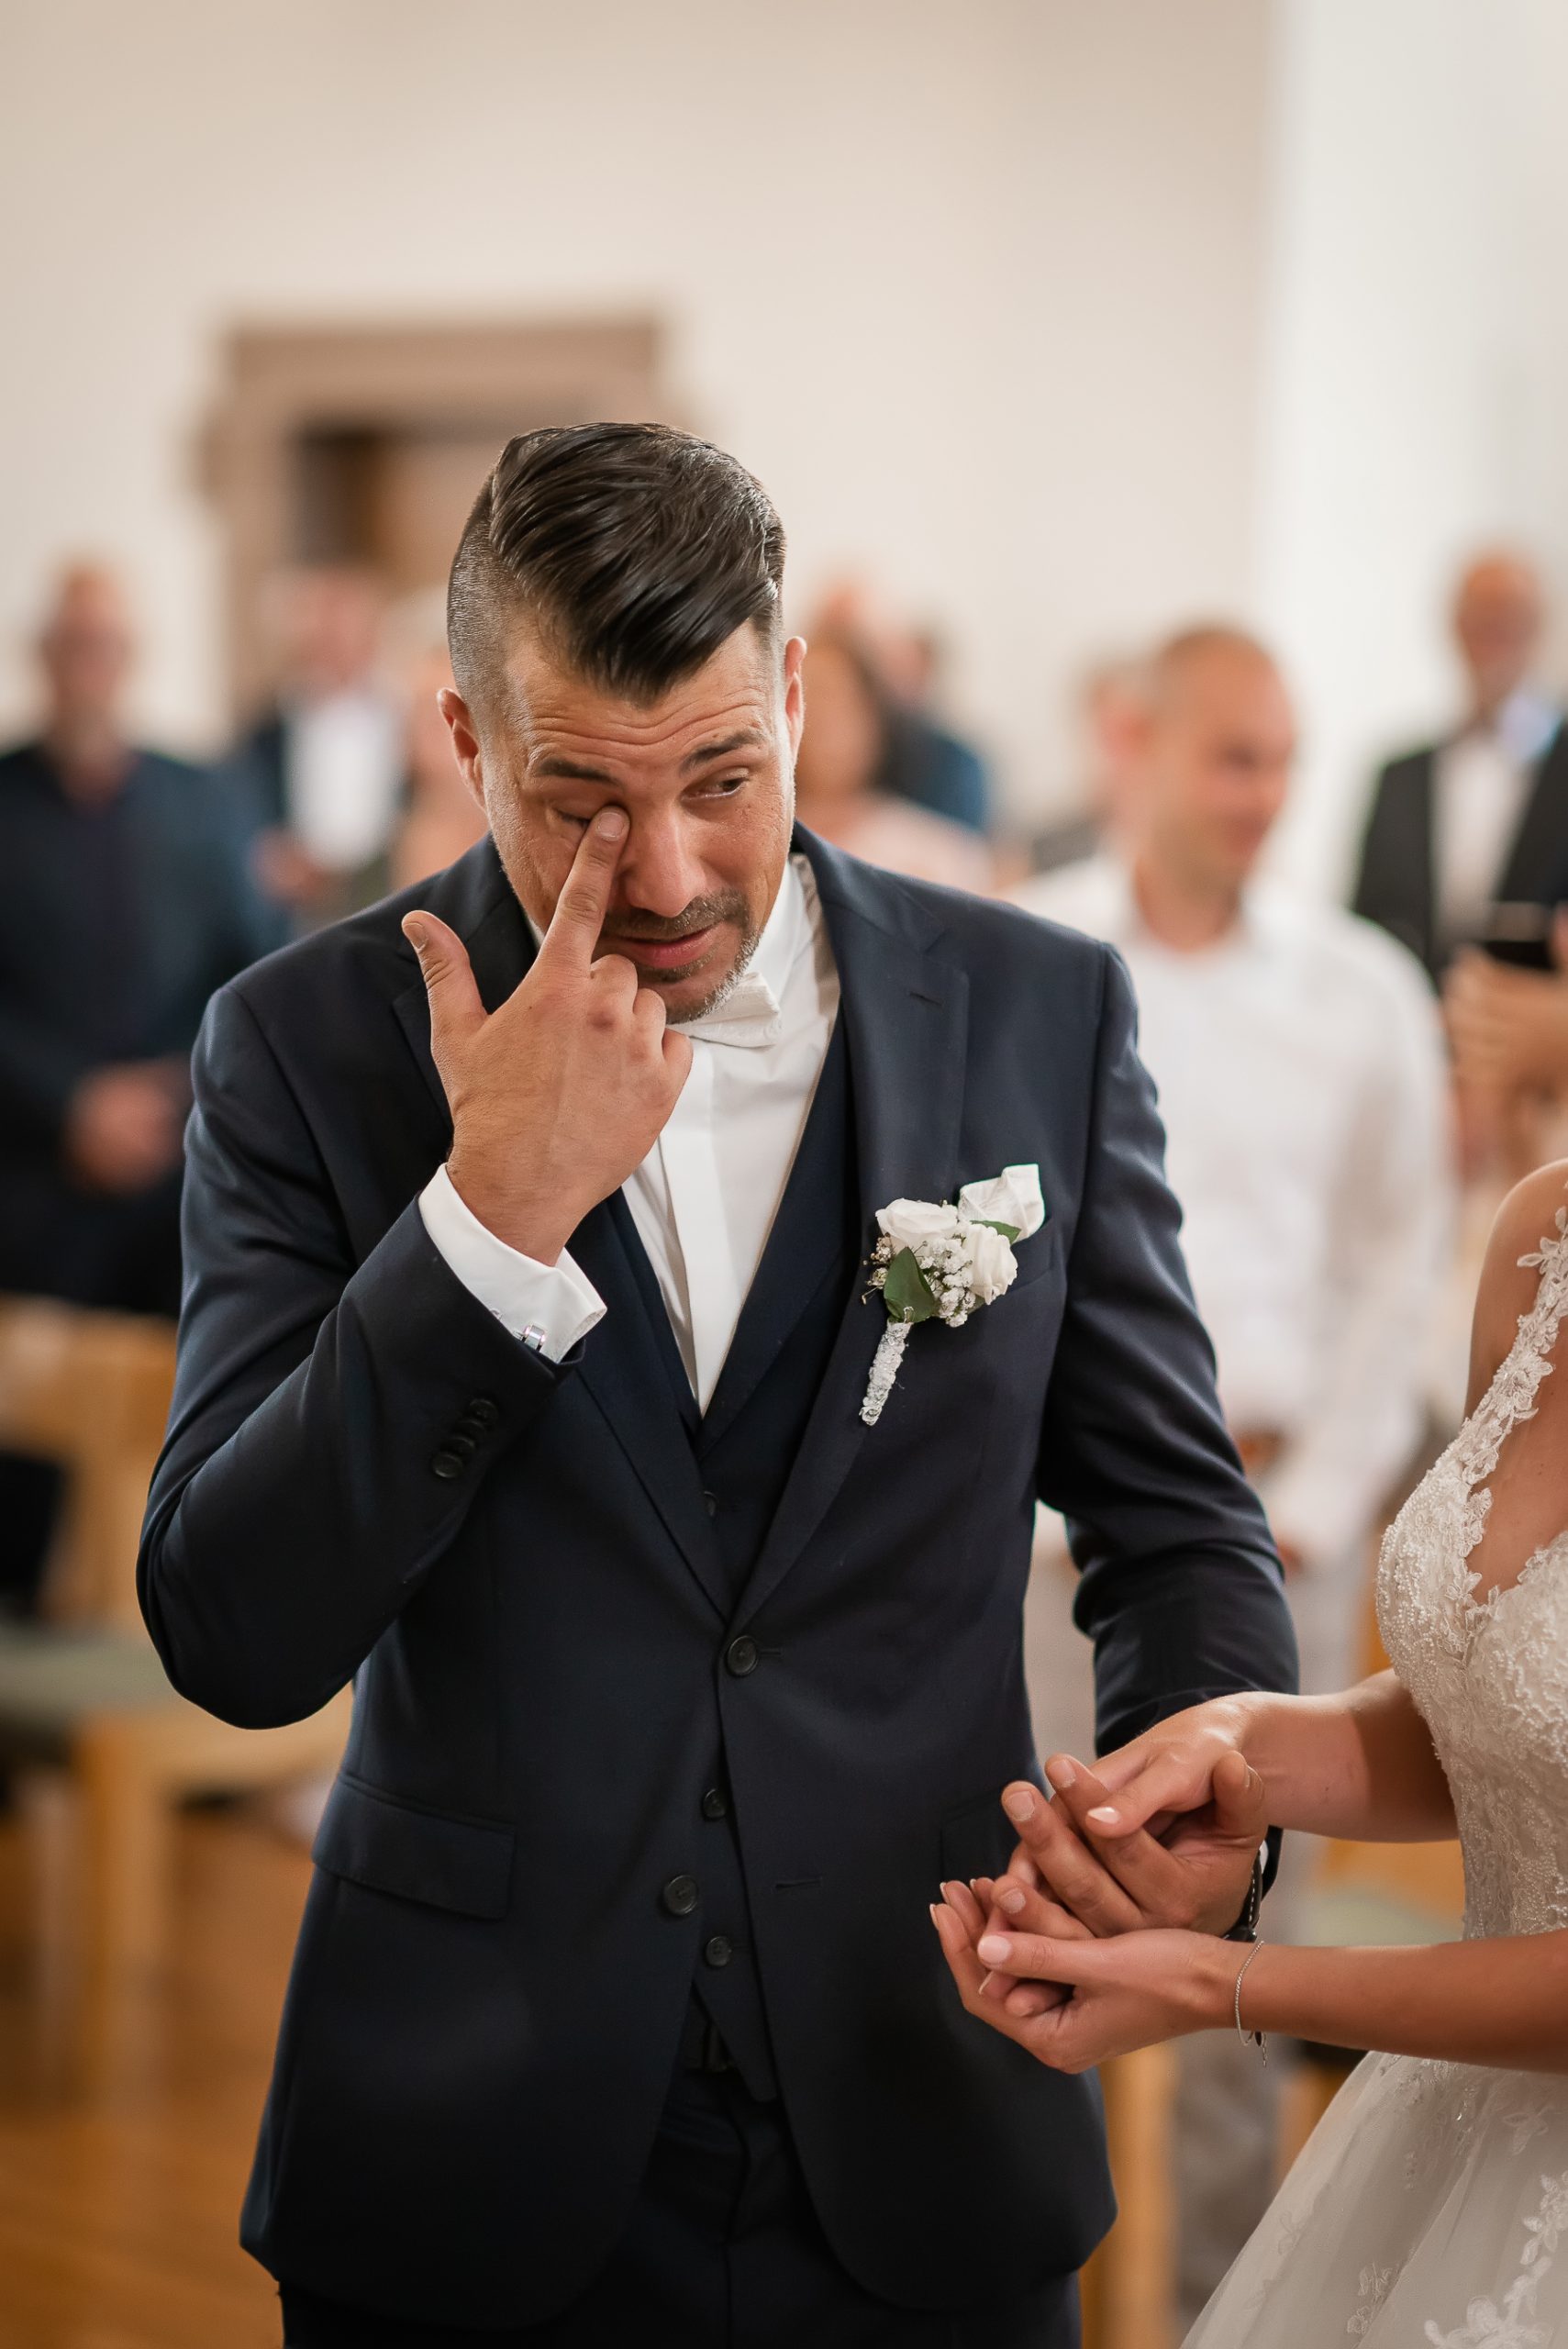 Ein Foto, das die emotionale Reaktion des Bräutigams zeigt, als er von seiner Braut während einer kirchlichen Hochzeit in Friesenheim überrascht wird.